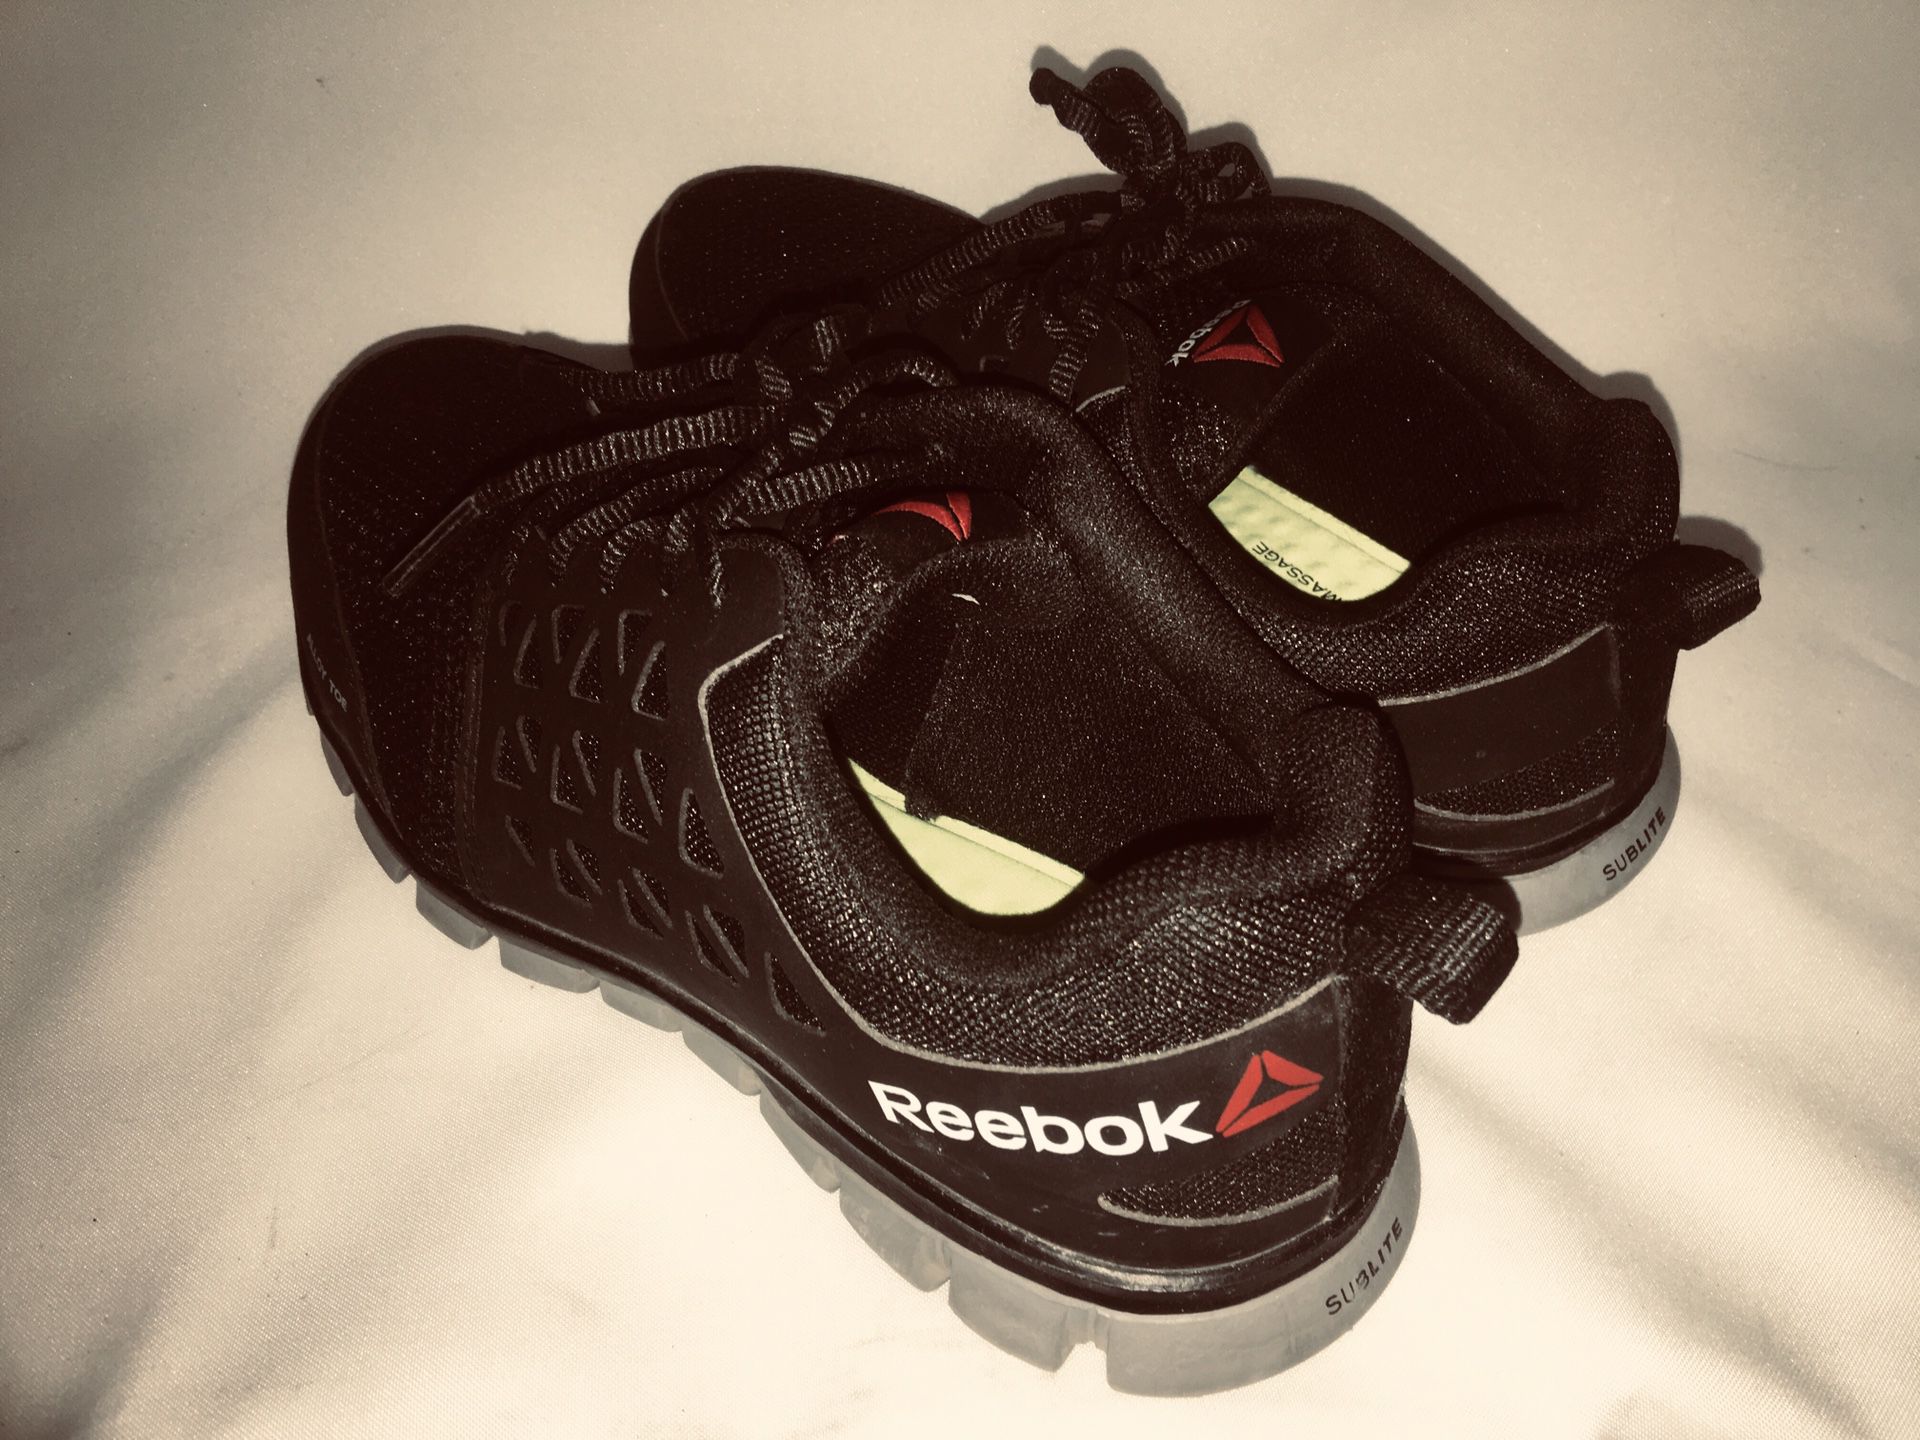 Men’s Size 8 W Reebok Tennis Shoes